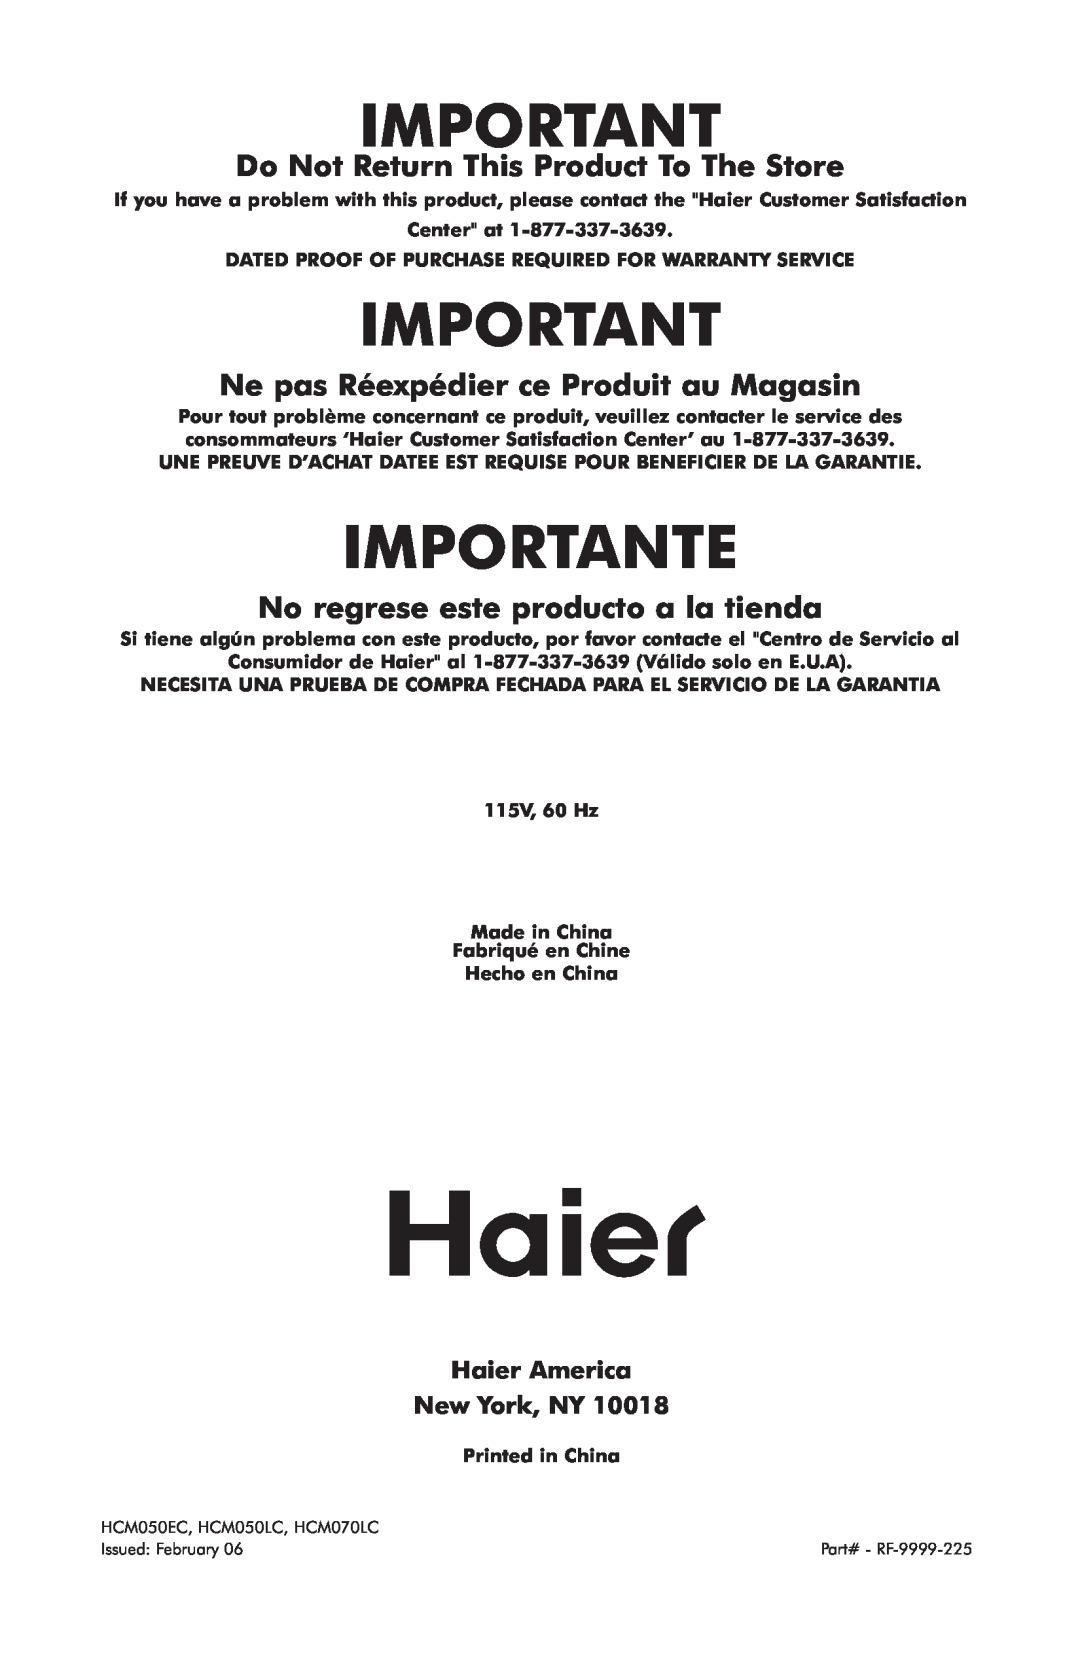 Haier HCM050LC, HCM050EC Importante, Do Not Return This Product To The Store, Ne pas Réexpédier ce Produit au Magasin 